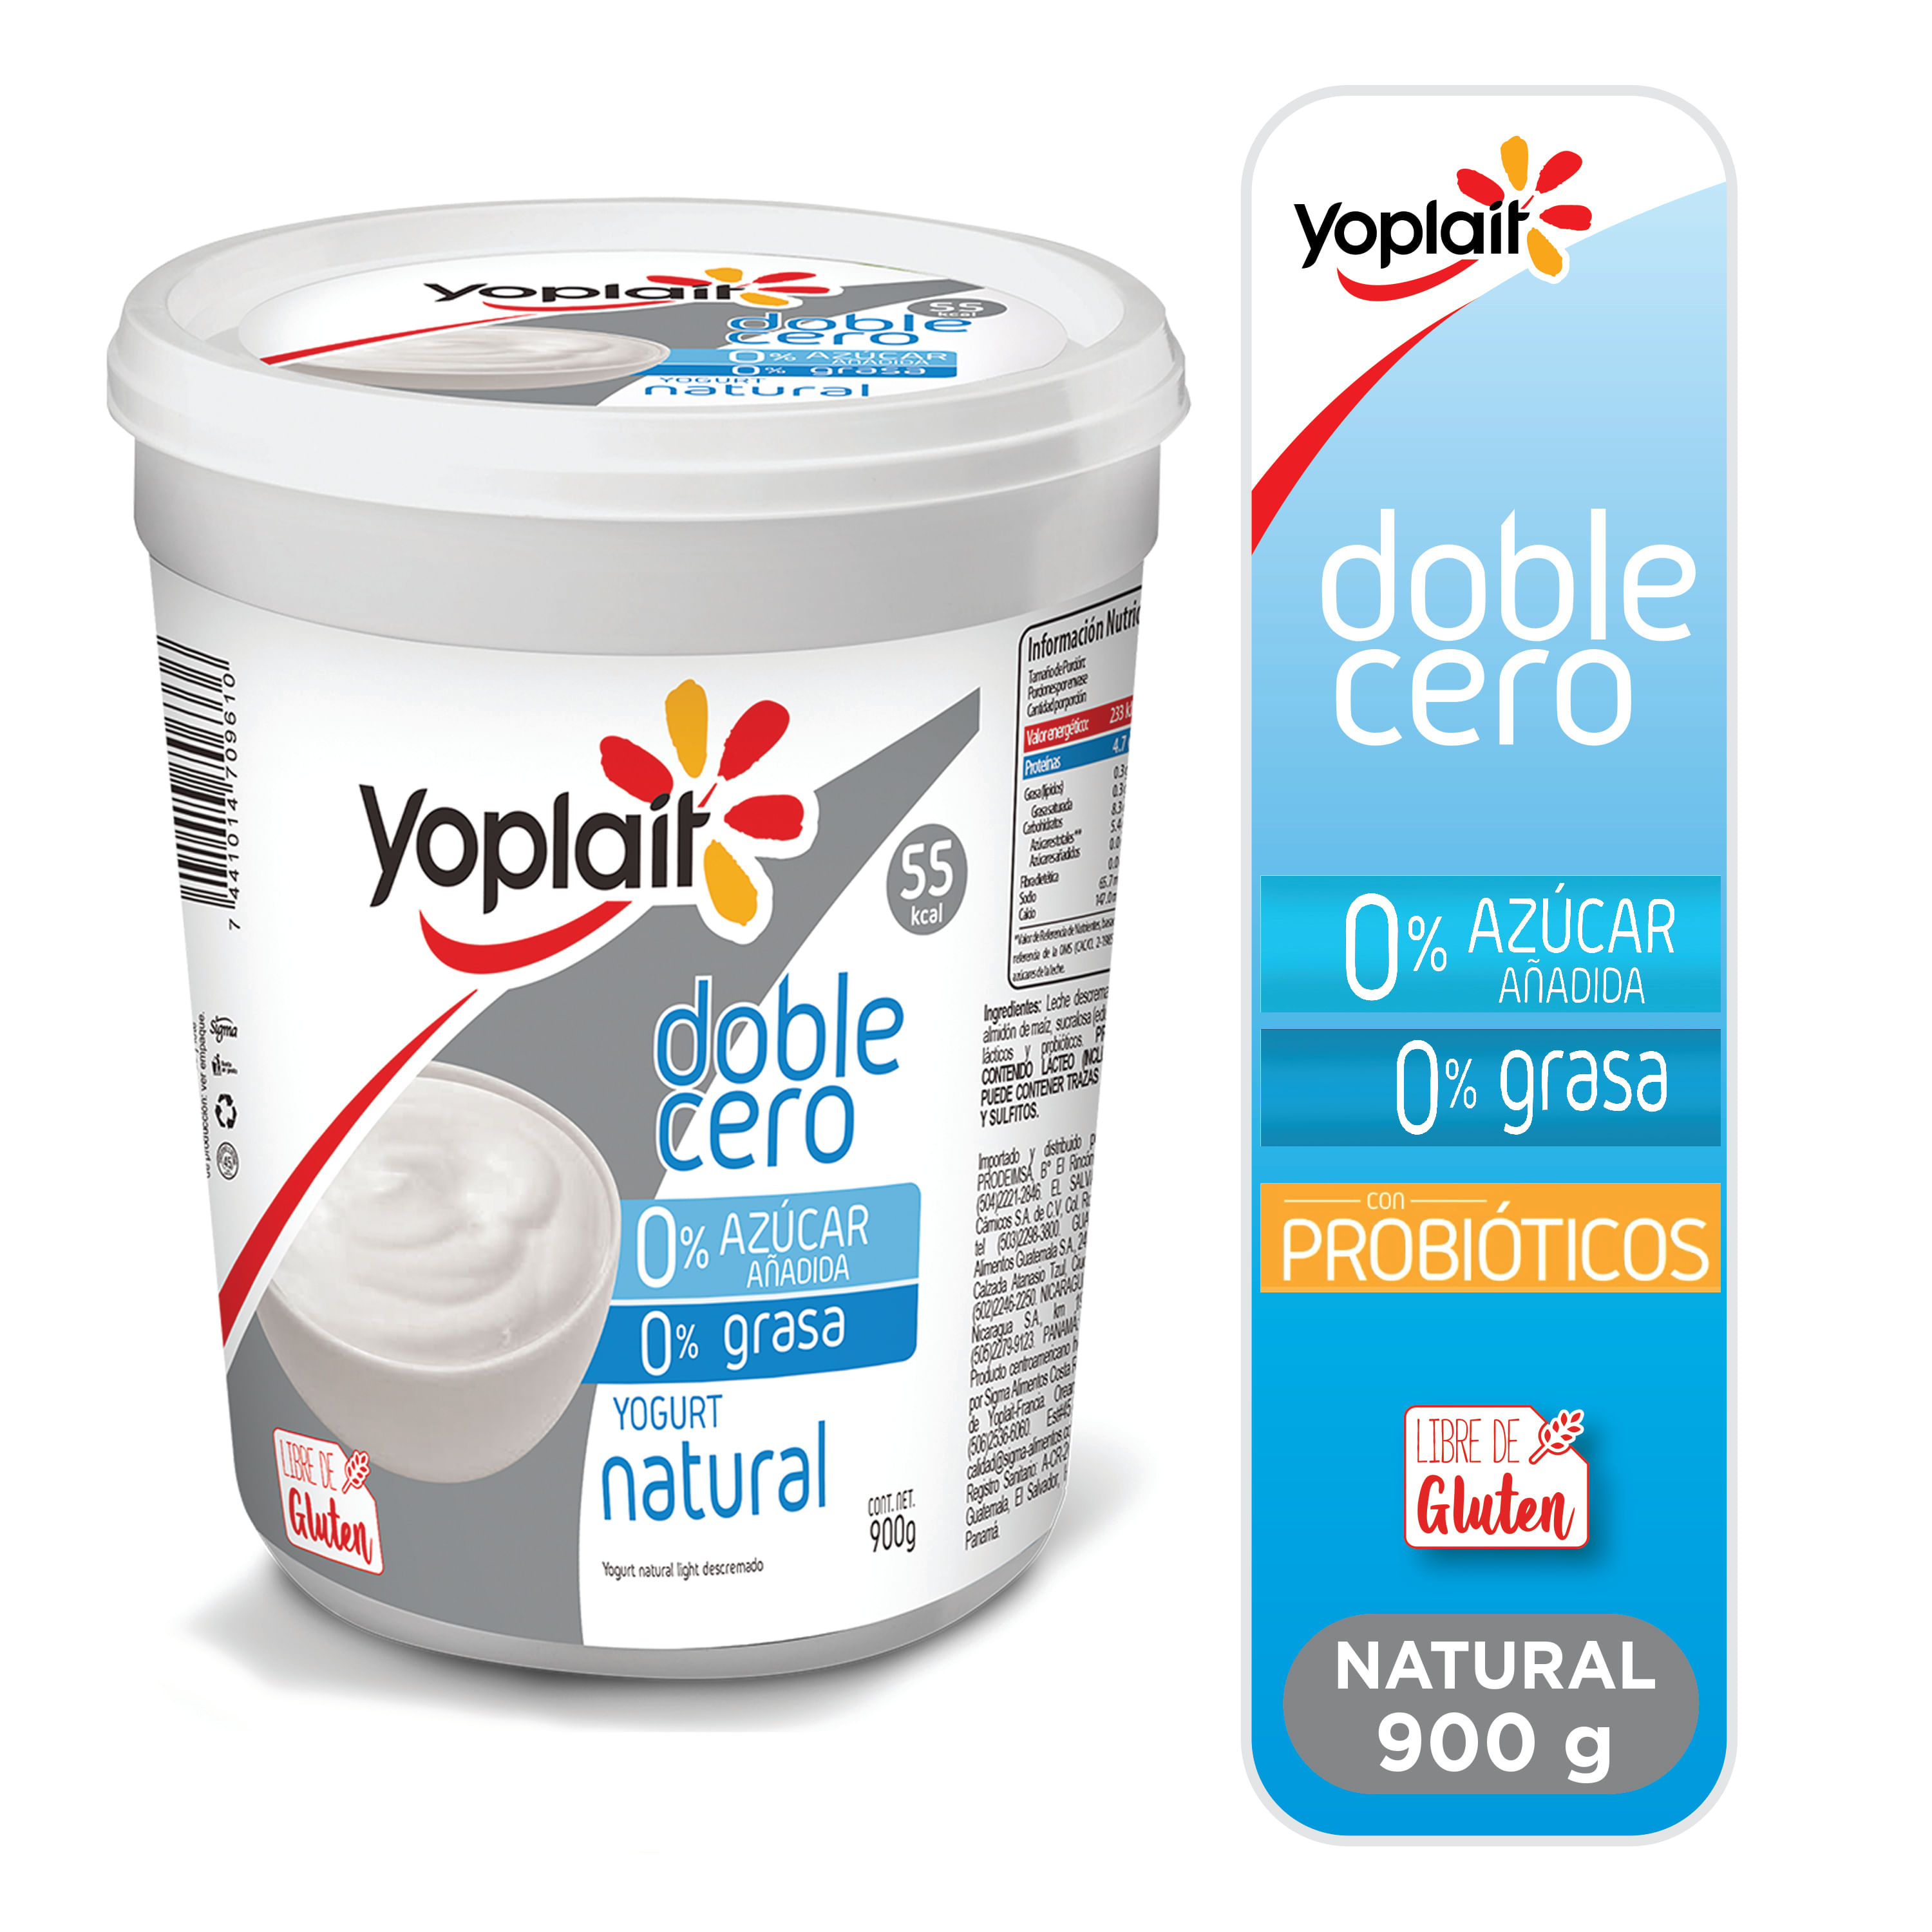 Comprar Yogurt Yoplait Batido Fresa - 900gr